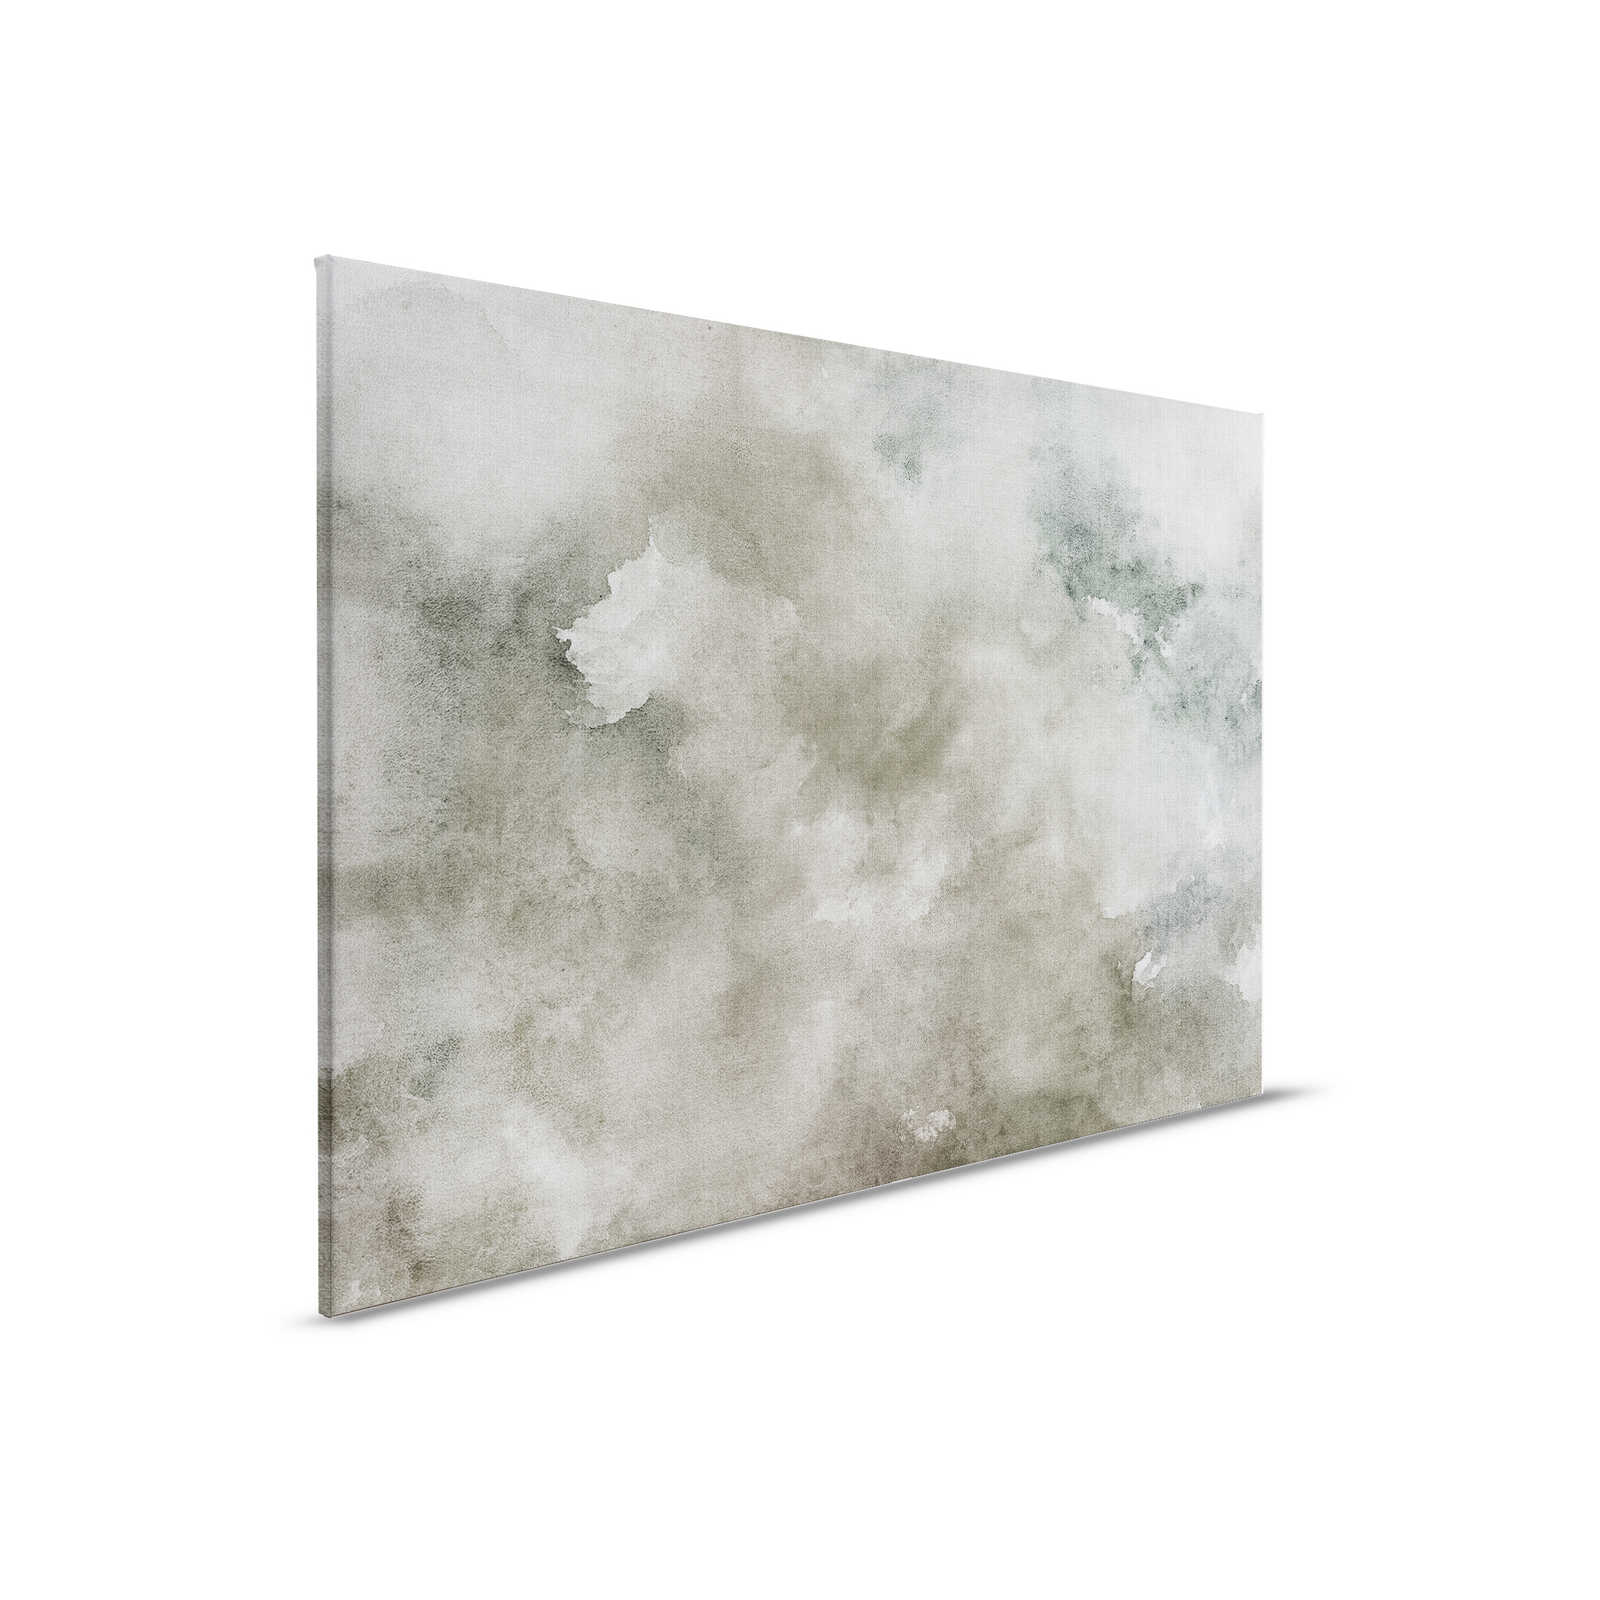 Acquerelli 1 - Quadro su tela ad acquerello grigio in lino naturale - 0,90 m x 0,60 m
